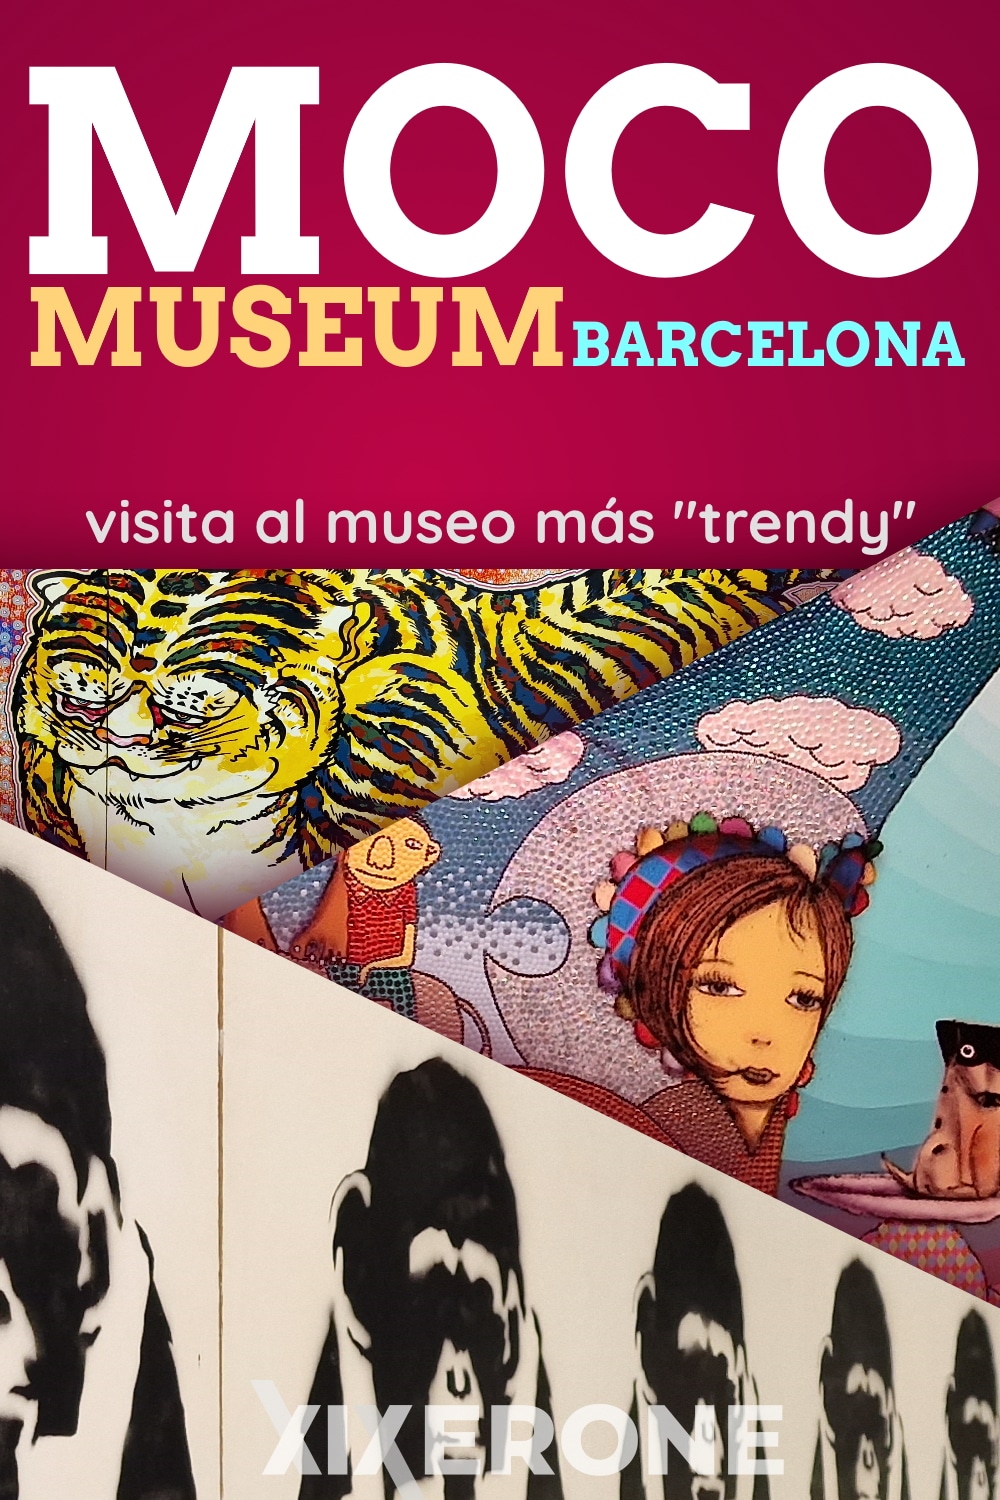 Visita al Moco Museum de Barcelona - El museo más trendy